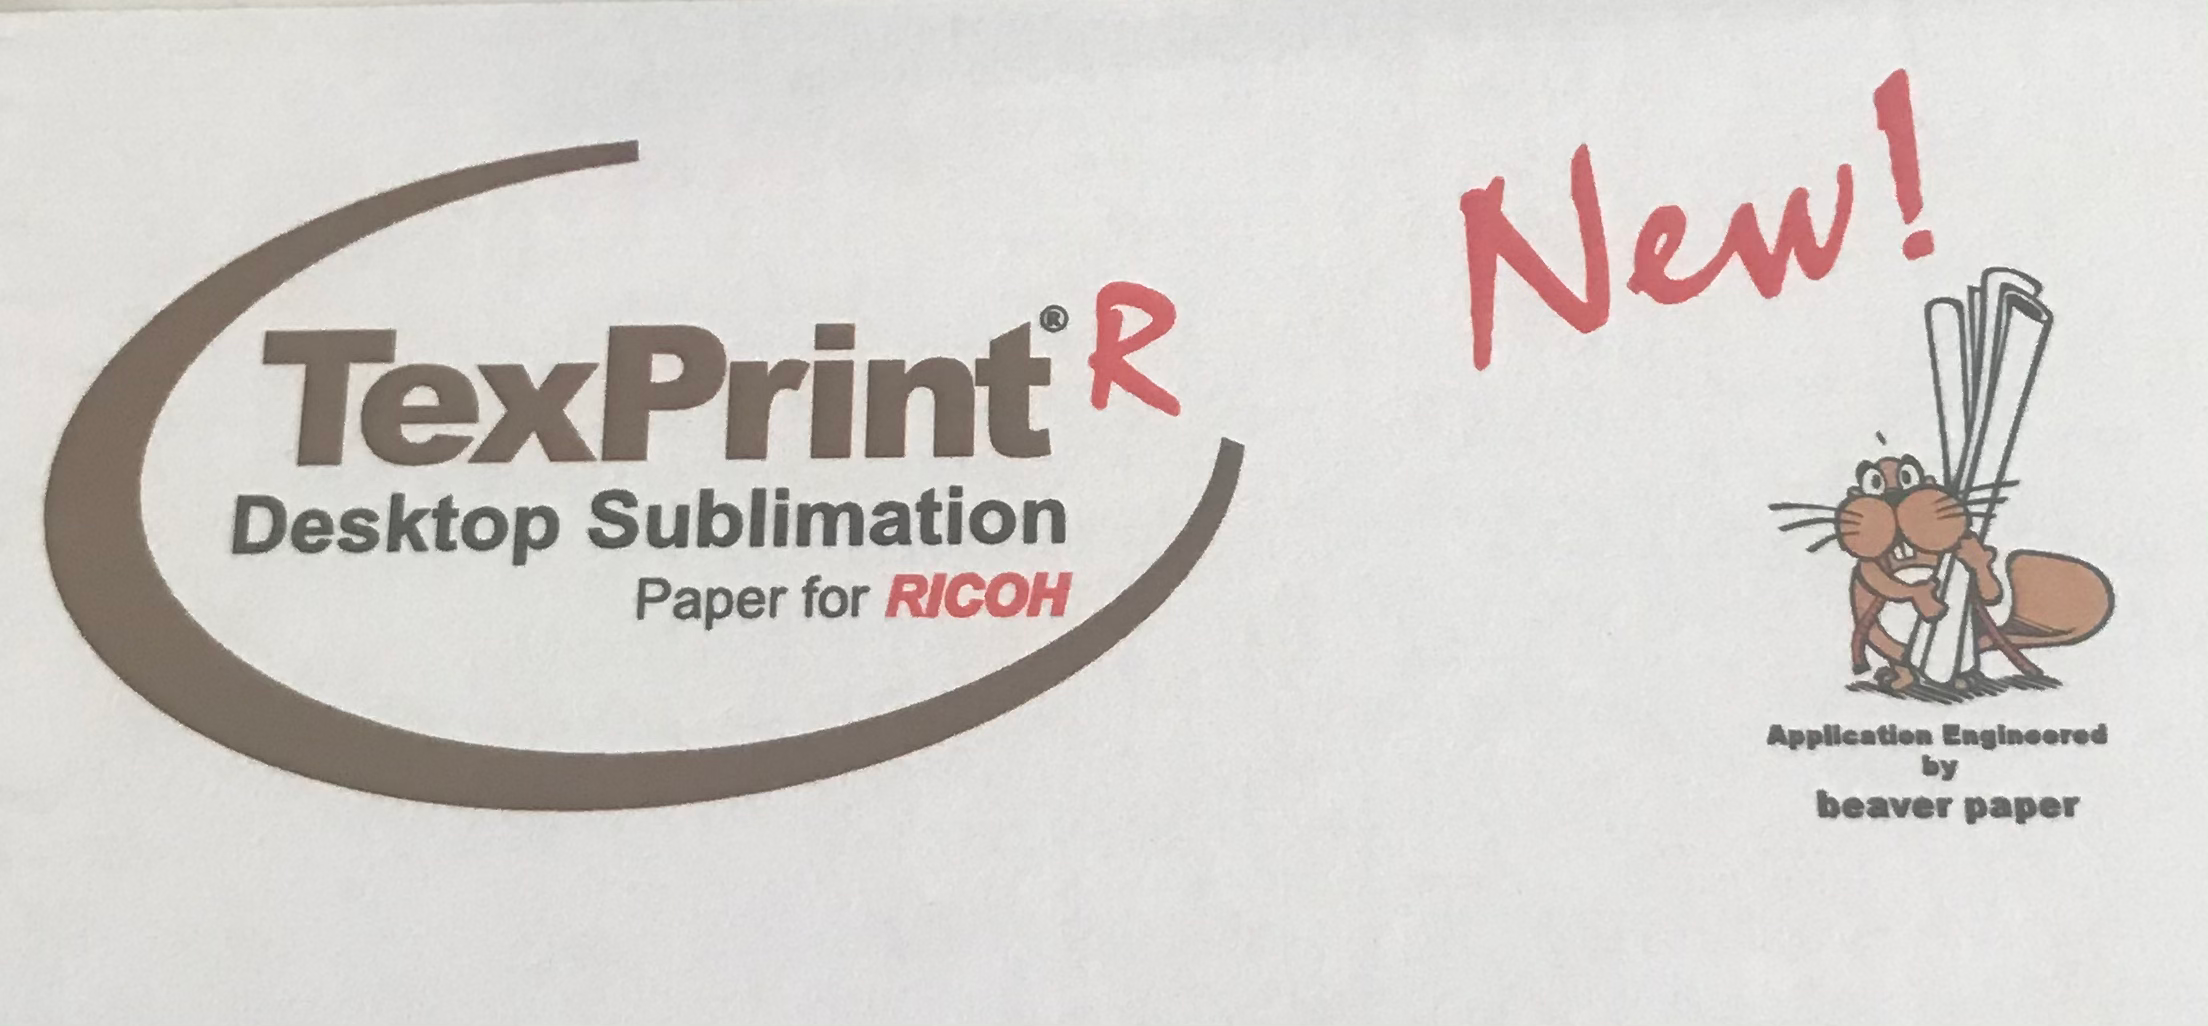 Papier sublimation TexPrint DT-R heavy A4 Ramette (110 feuilles) Sublimation  Transfert Thermique Feuille A4, MATÉRIAUX \ PAPIER POUR SUBLIMATION